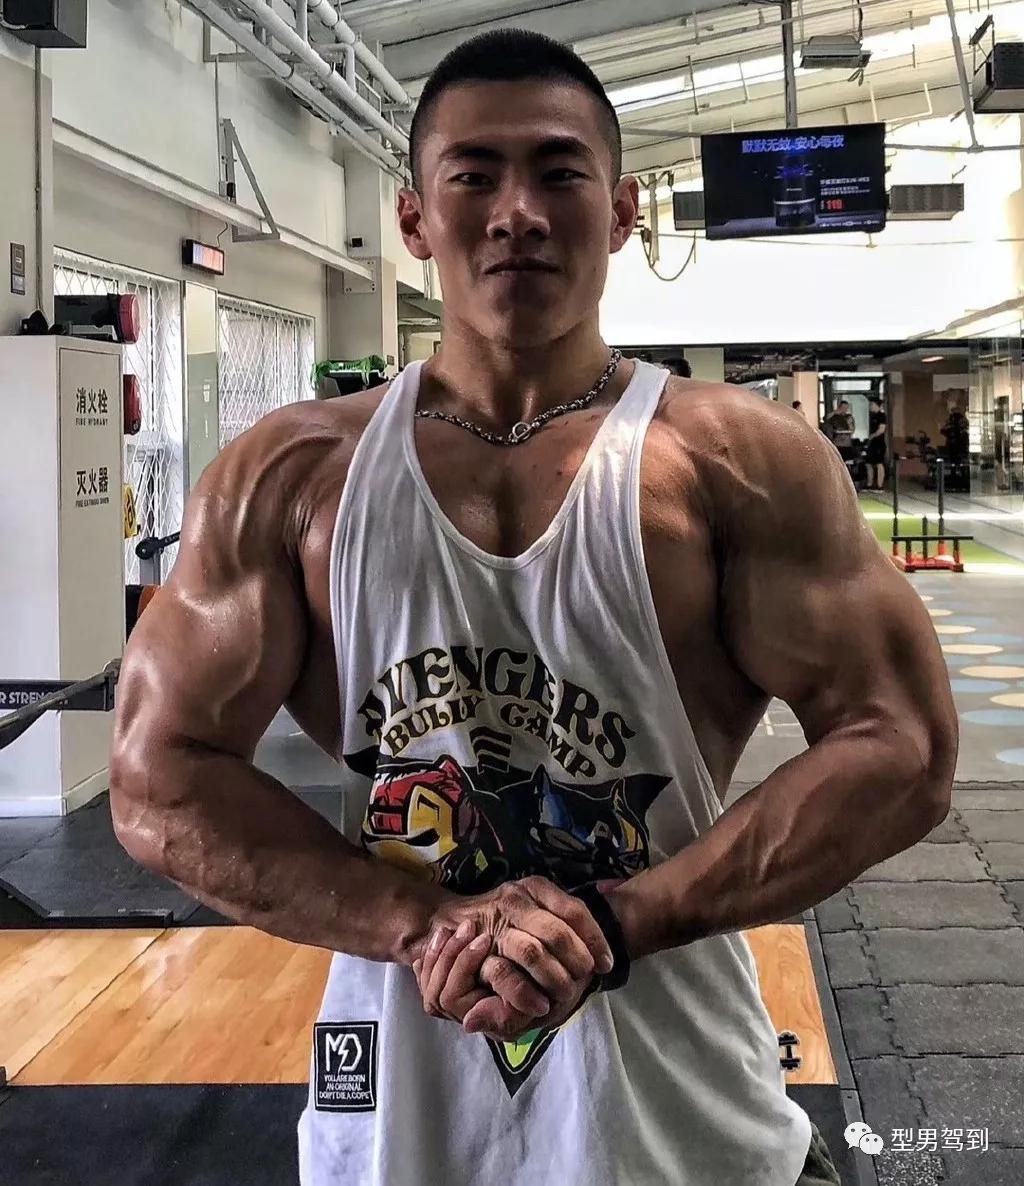 22岁北京最强大学生,这肌肉谁能抗得住啊